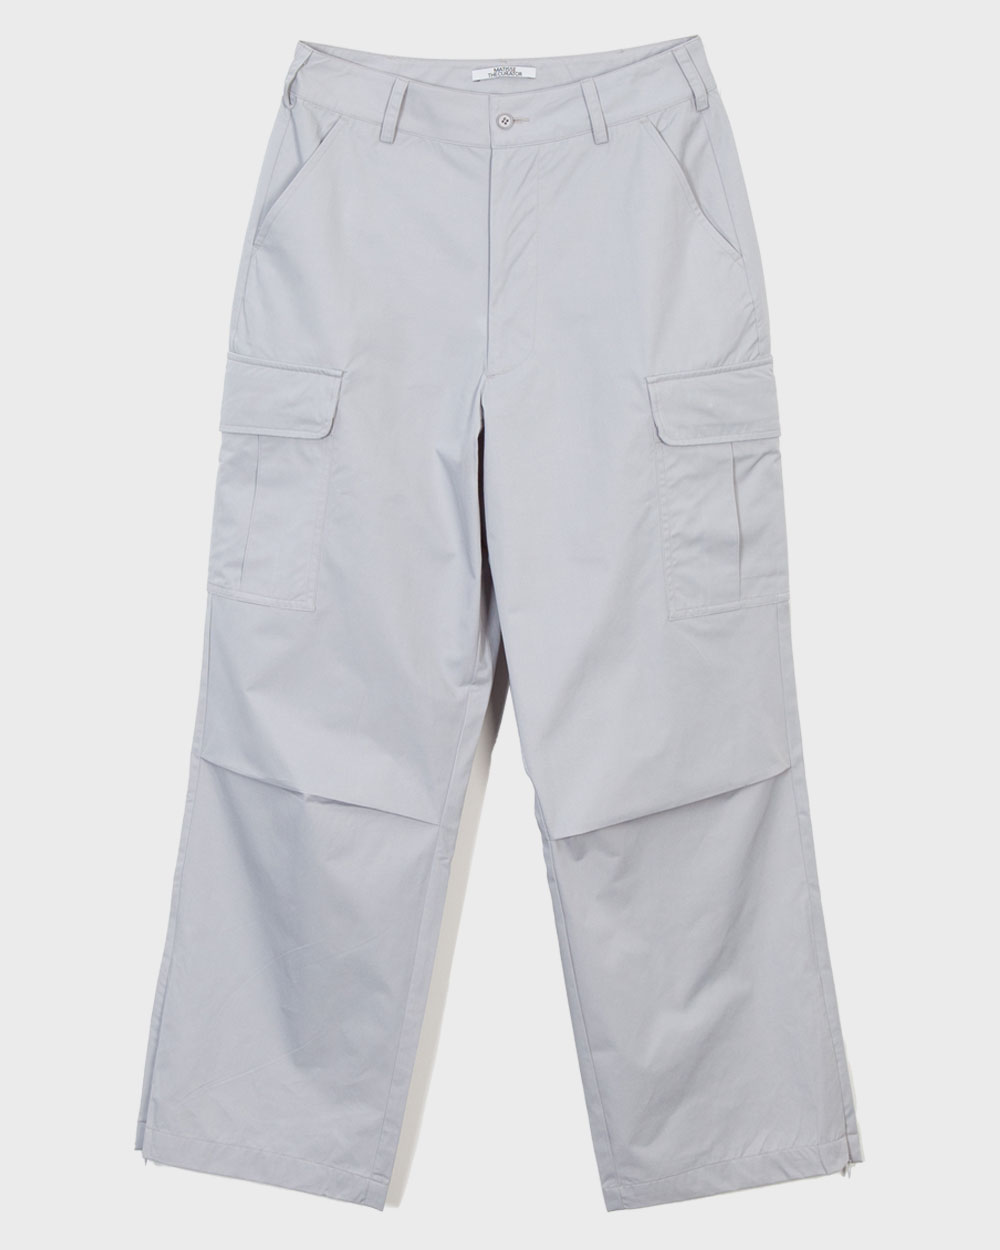 마티스더큐레이터 Field pants (Silver grey)